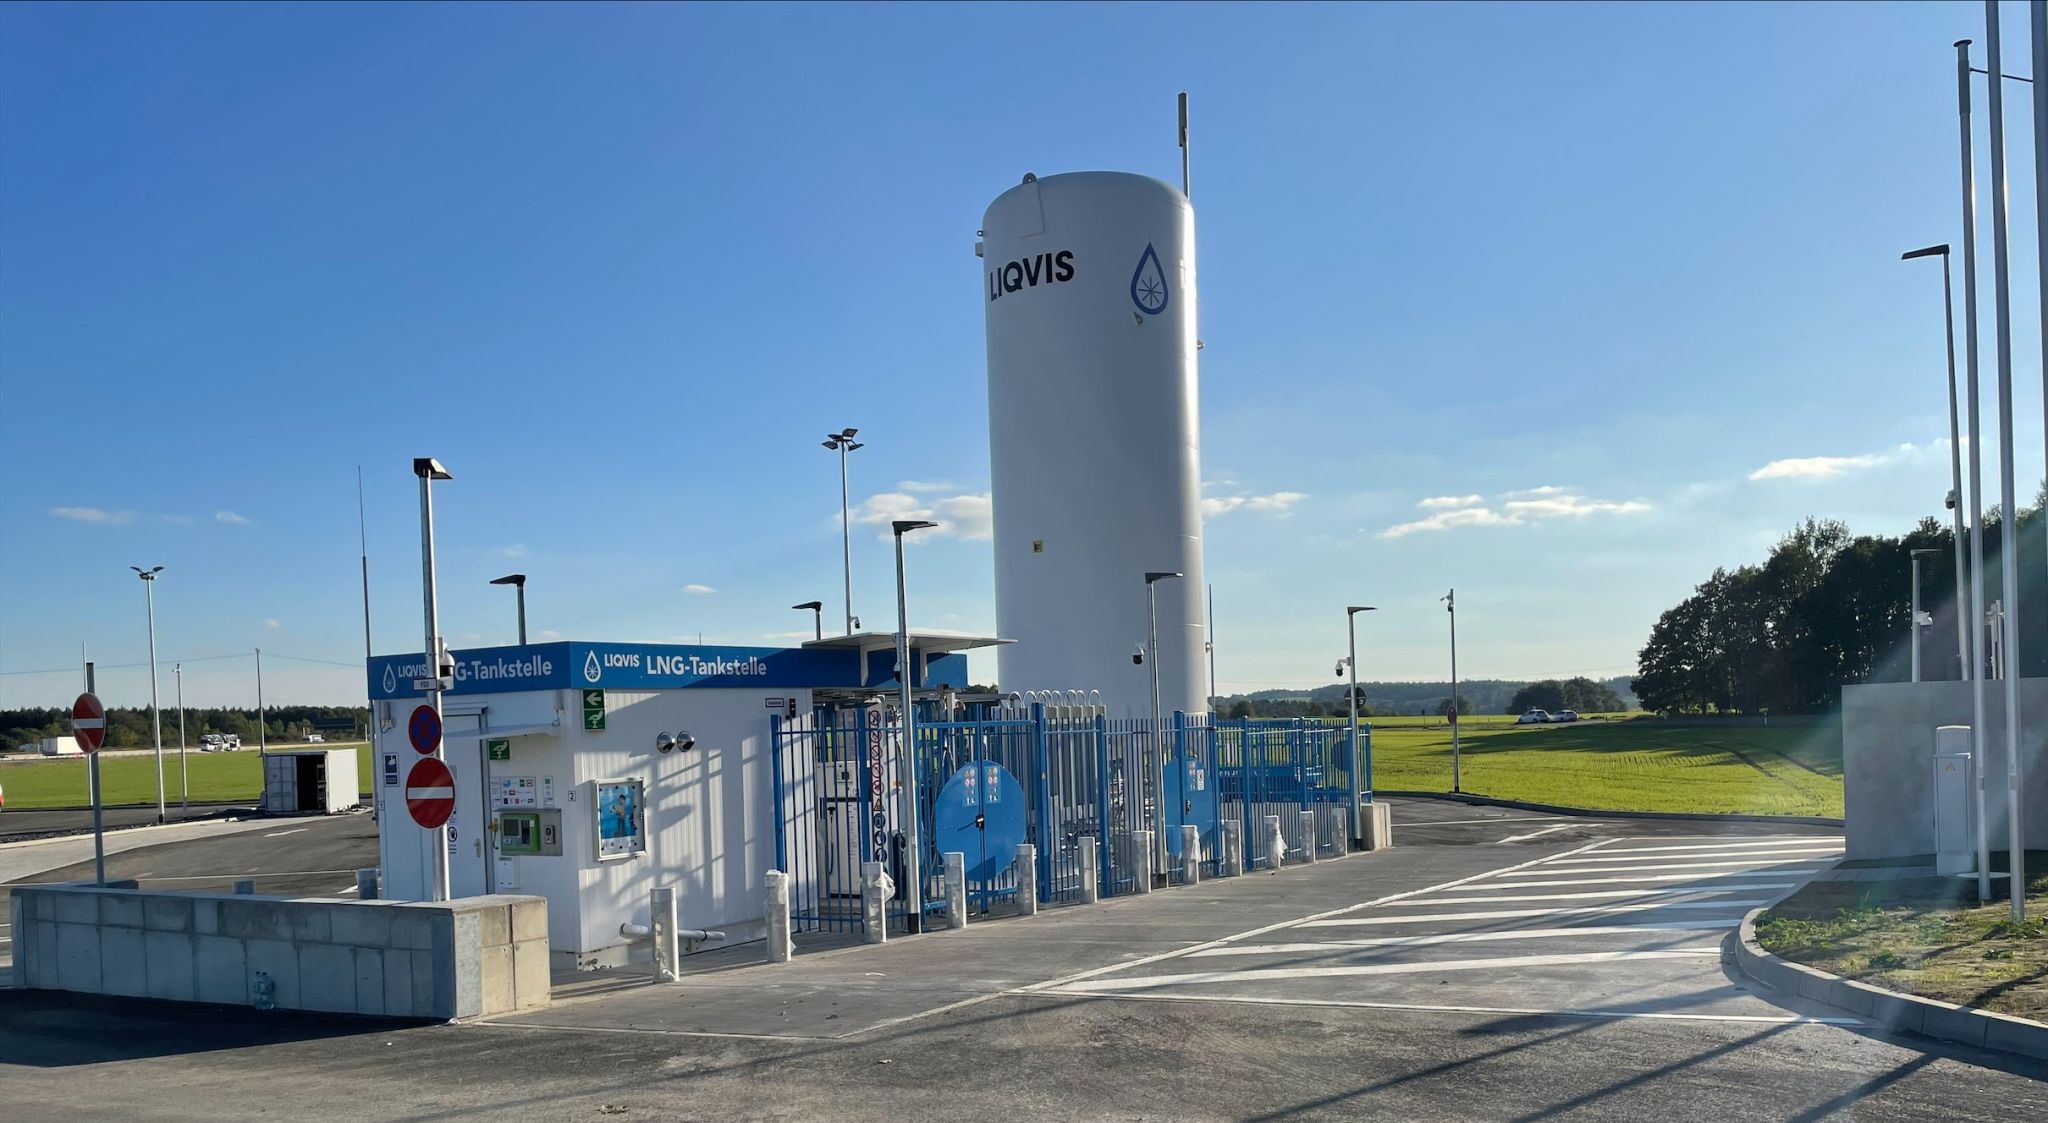 Liquis eröffnet neues deutsches LNG-Terminal